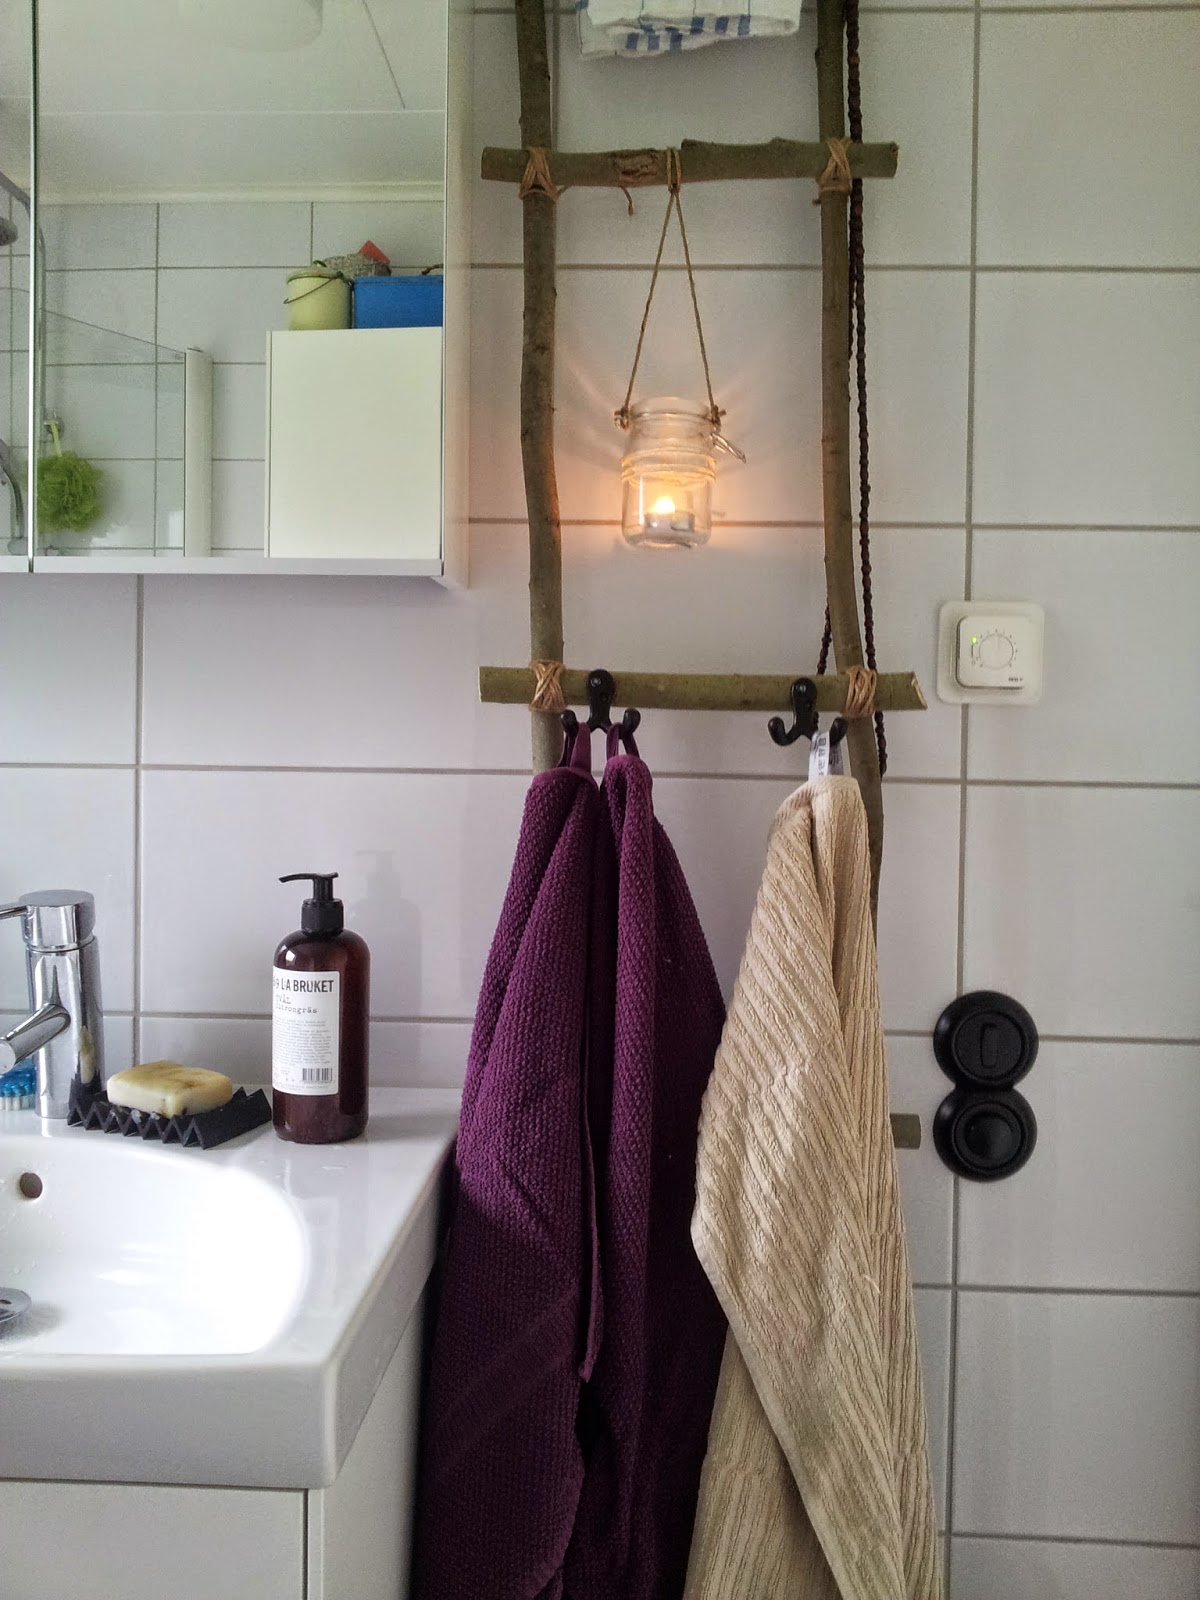 Lottas skaparkraft: Handdukar på stege i badrummet